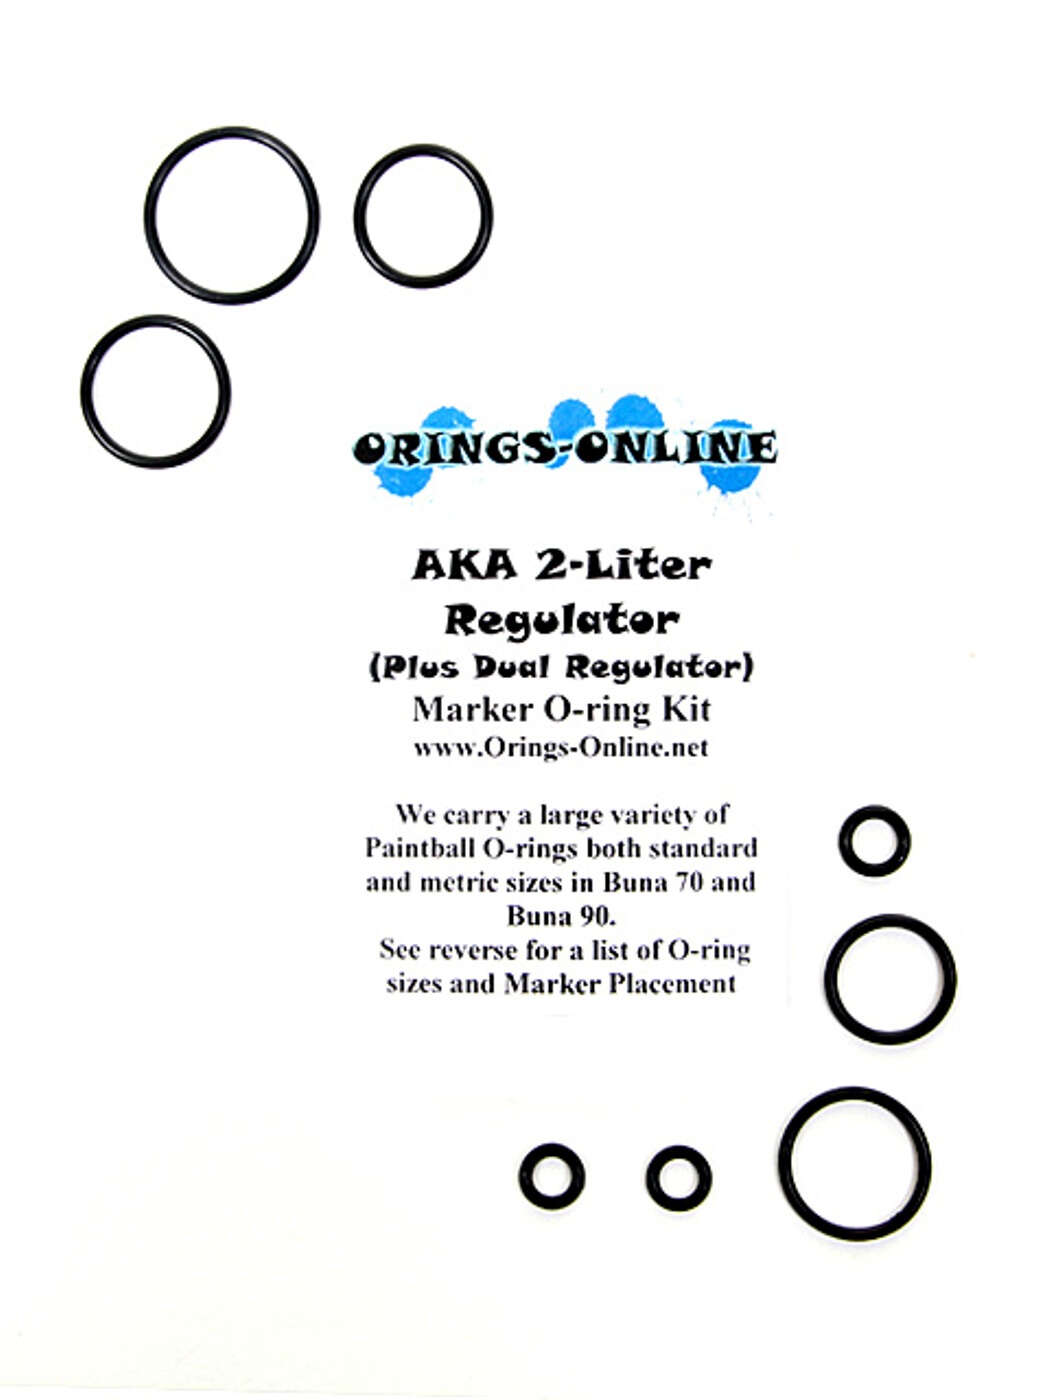 AKA 2 Liter / Plus Dual Regulator O-ring Kit